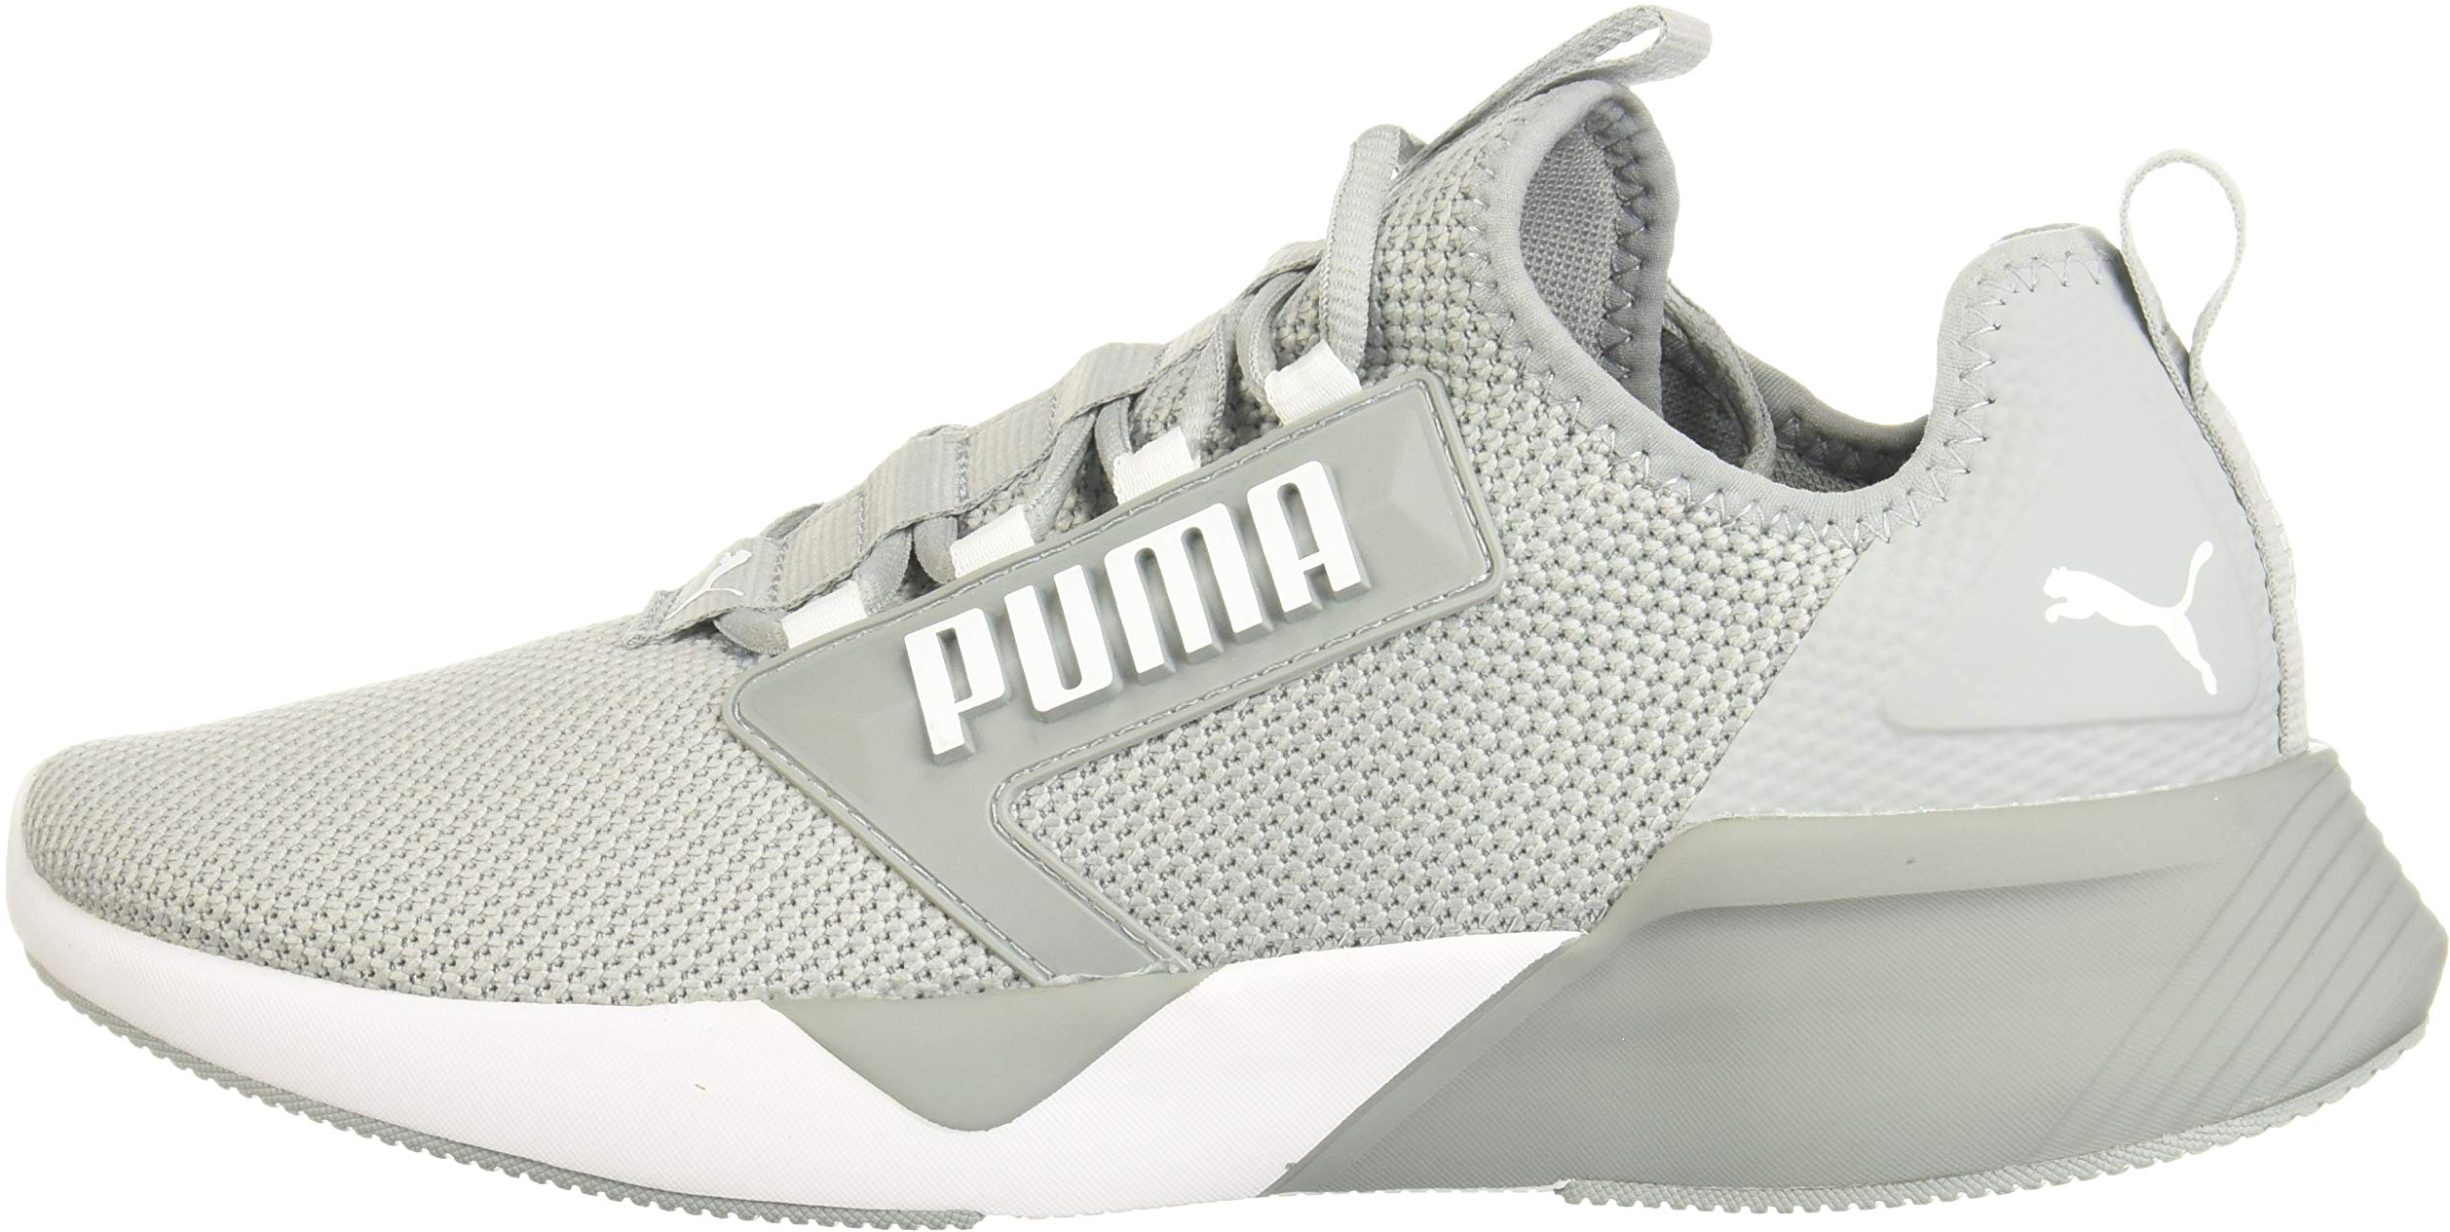 puma shoes for gym